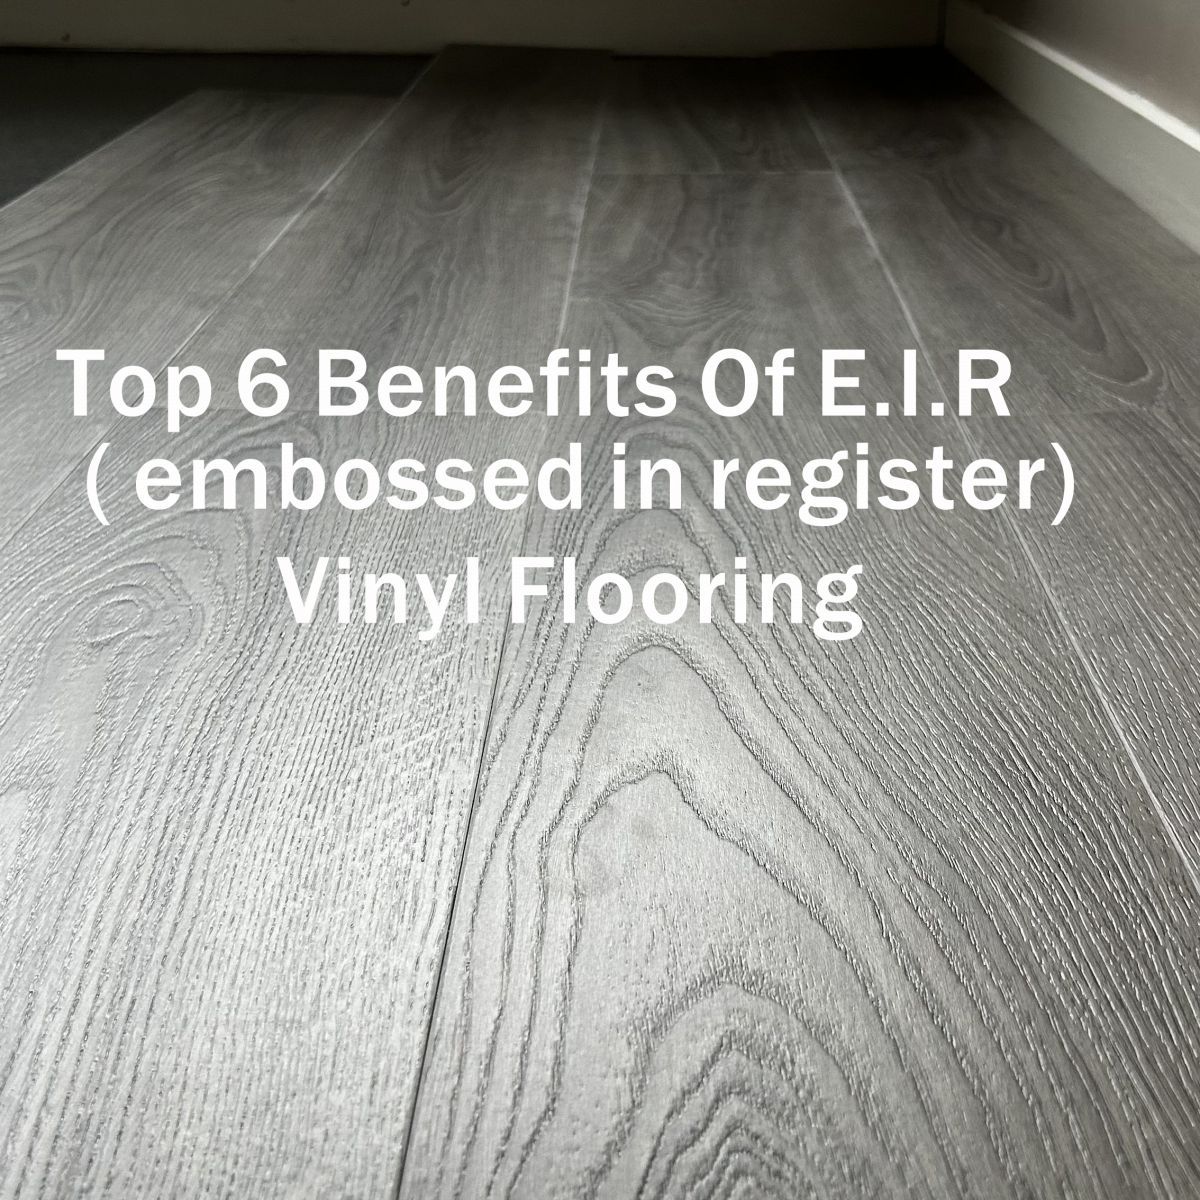 Top 6 Benefits Of E.I.R ( embossed in register)Vinyl Flooring